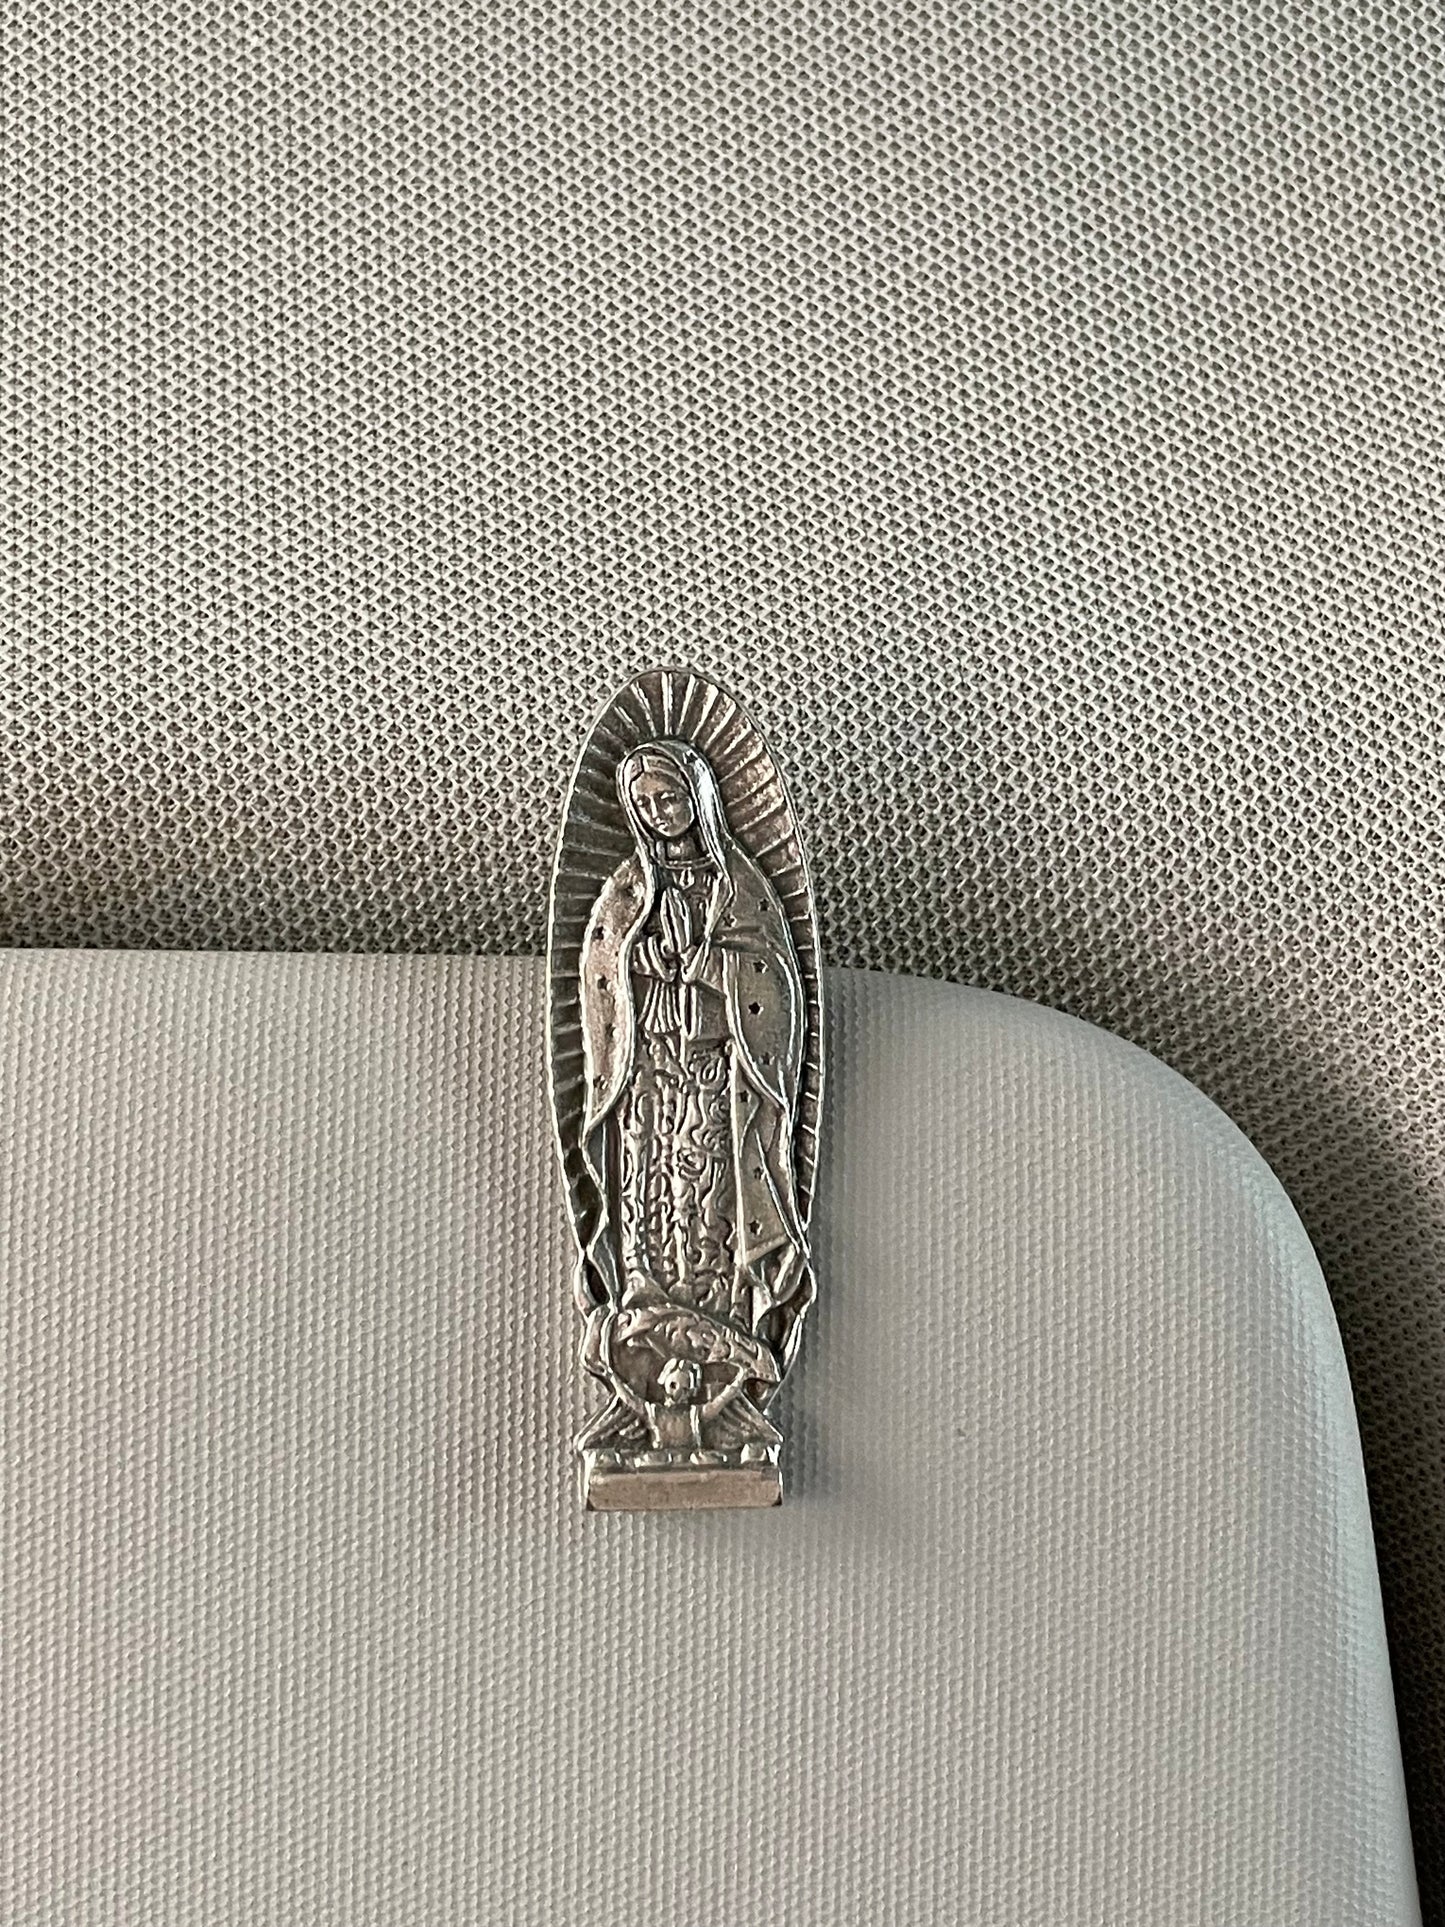 Clip Bendición de Auto de Virgen de Guadalupe / Paquete de 10 piezas